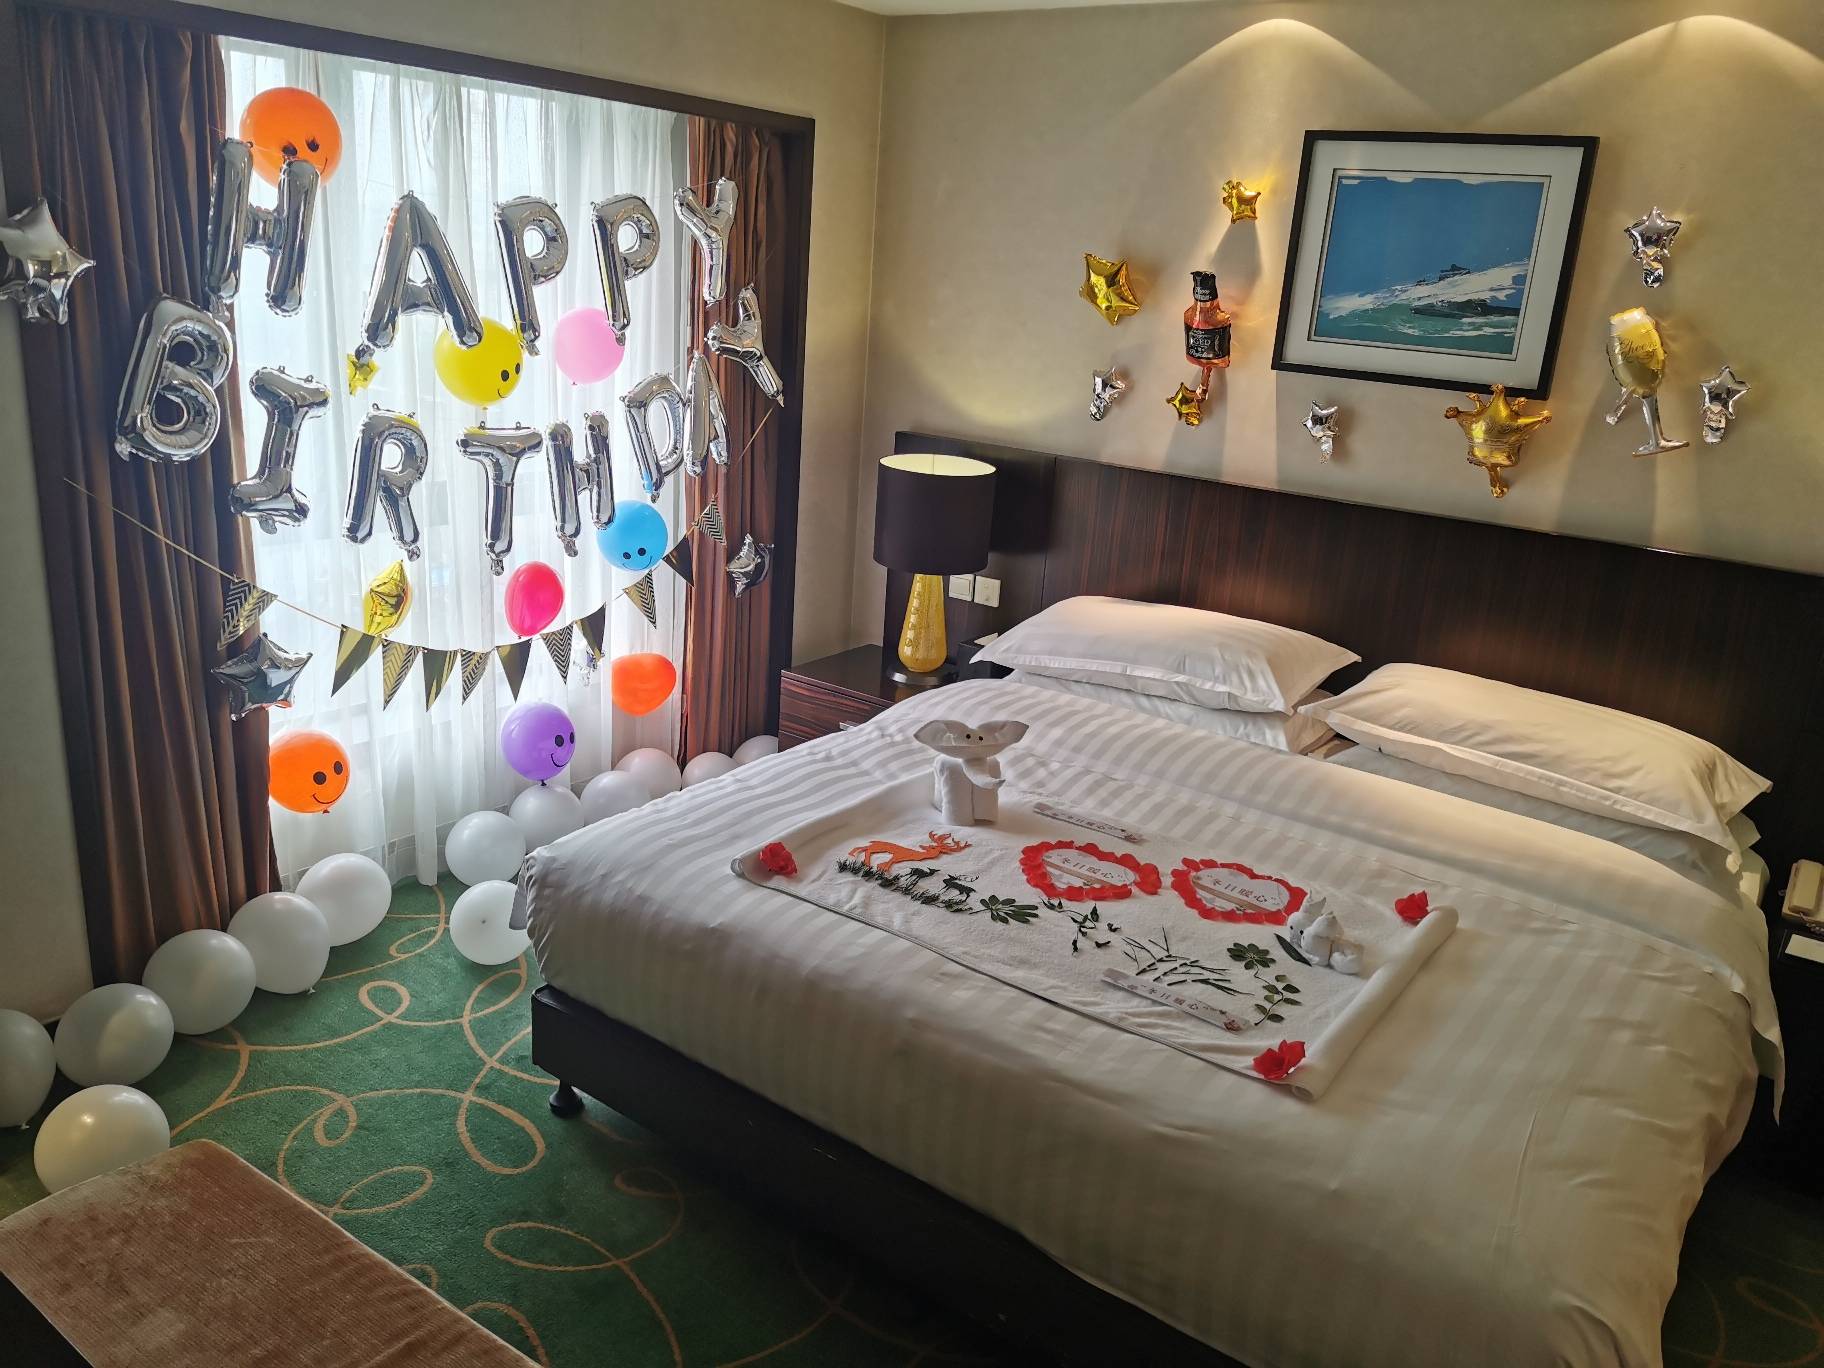 欢迎以及生日祝福,酒店为他精心布置了生日主题客房并准备了生日蛋糕